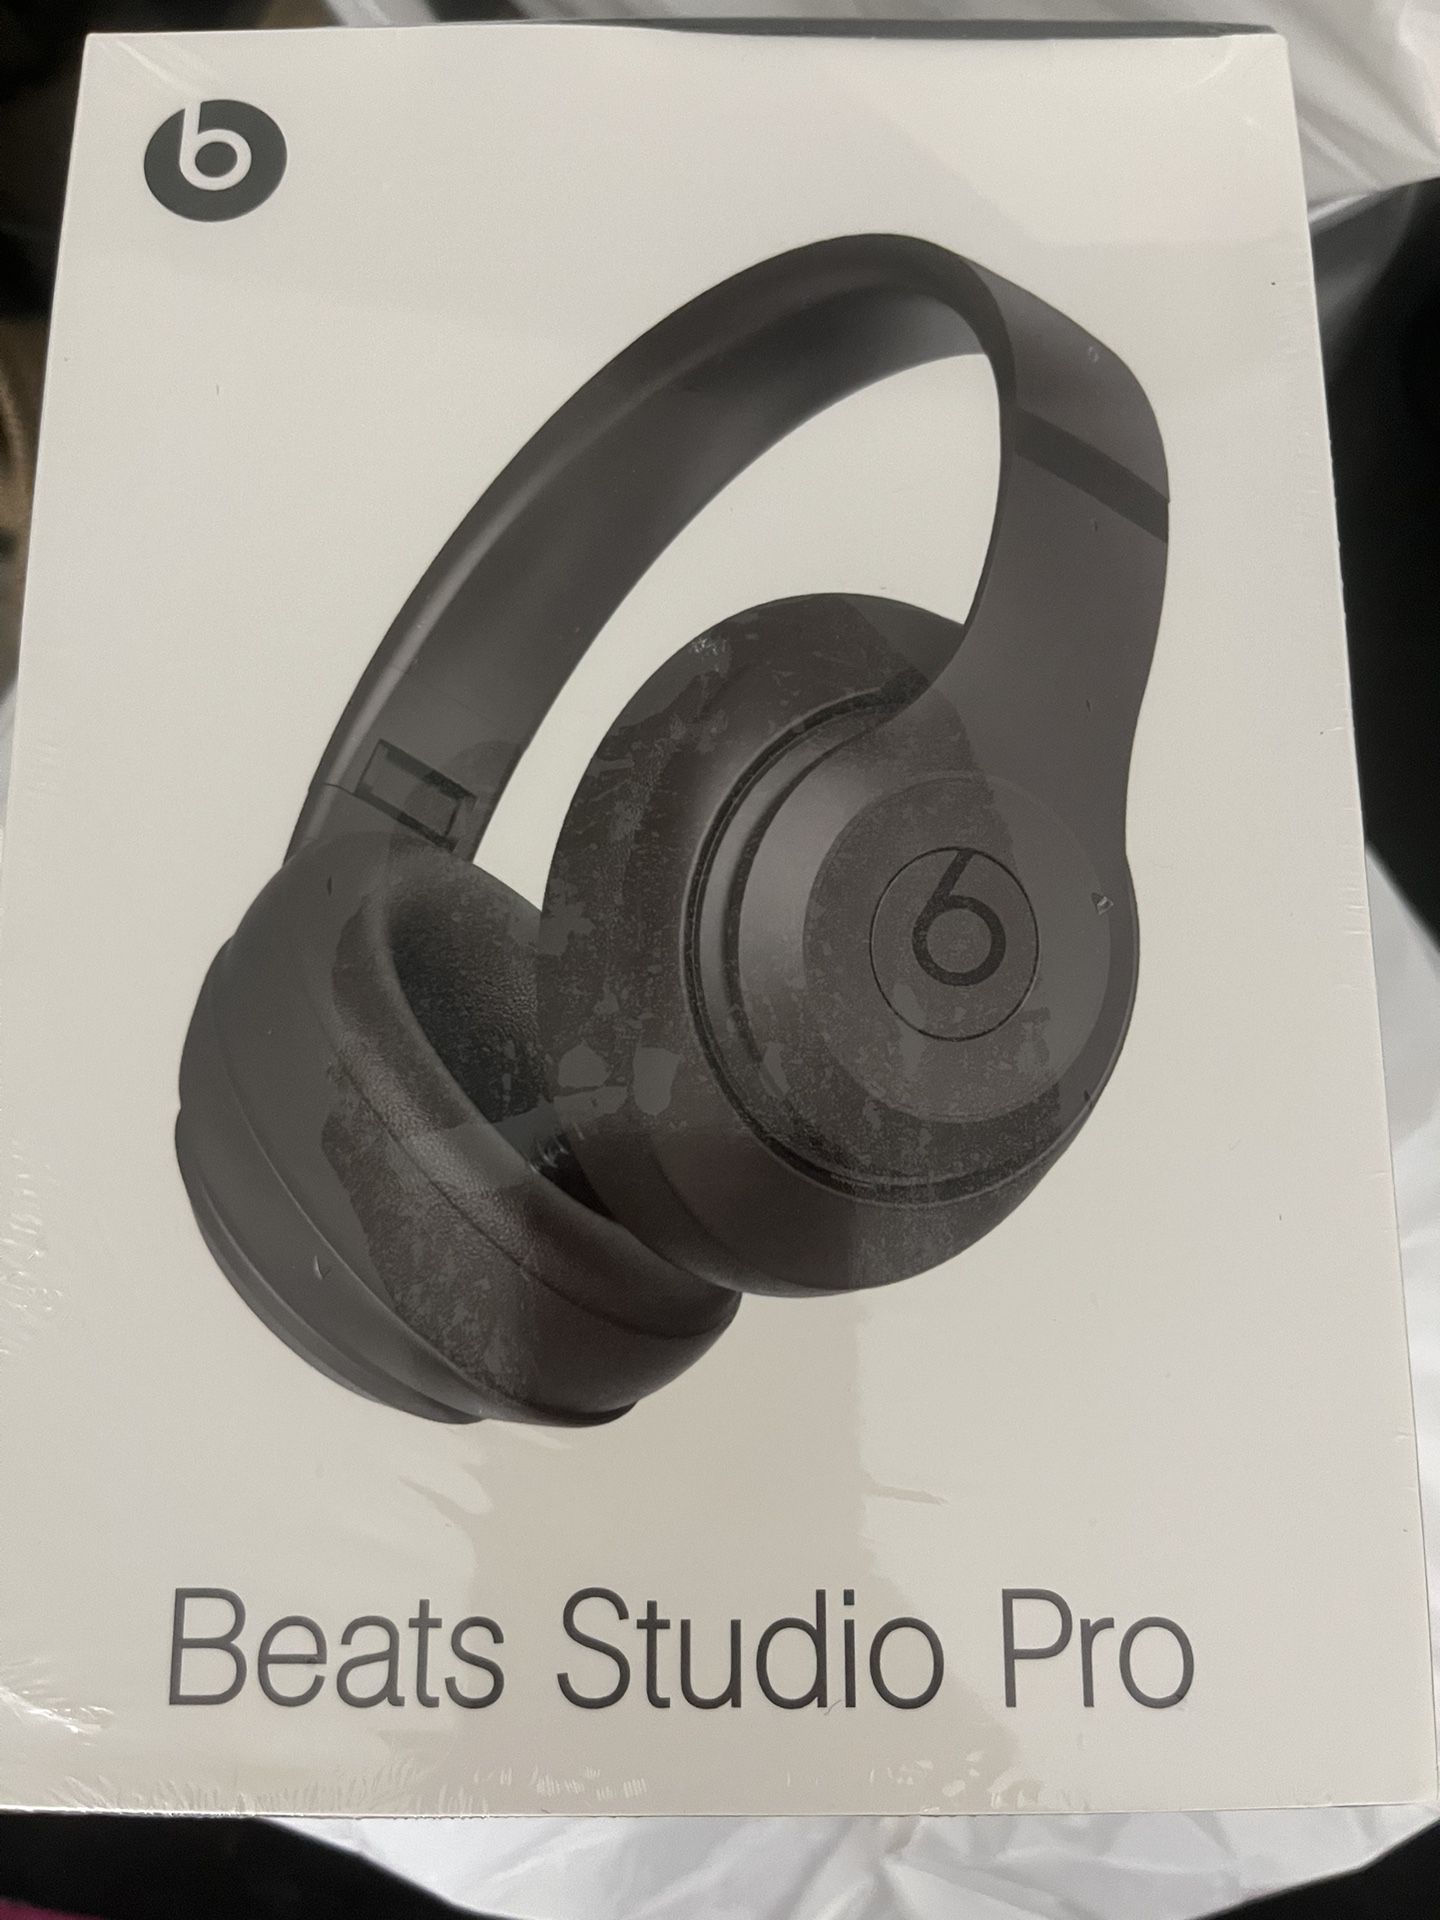 Beat Studio Pro